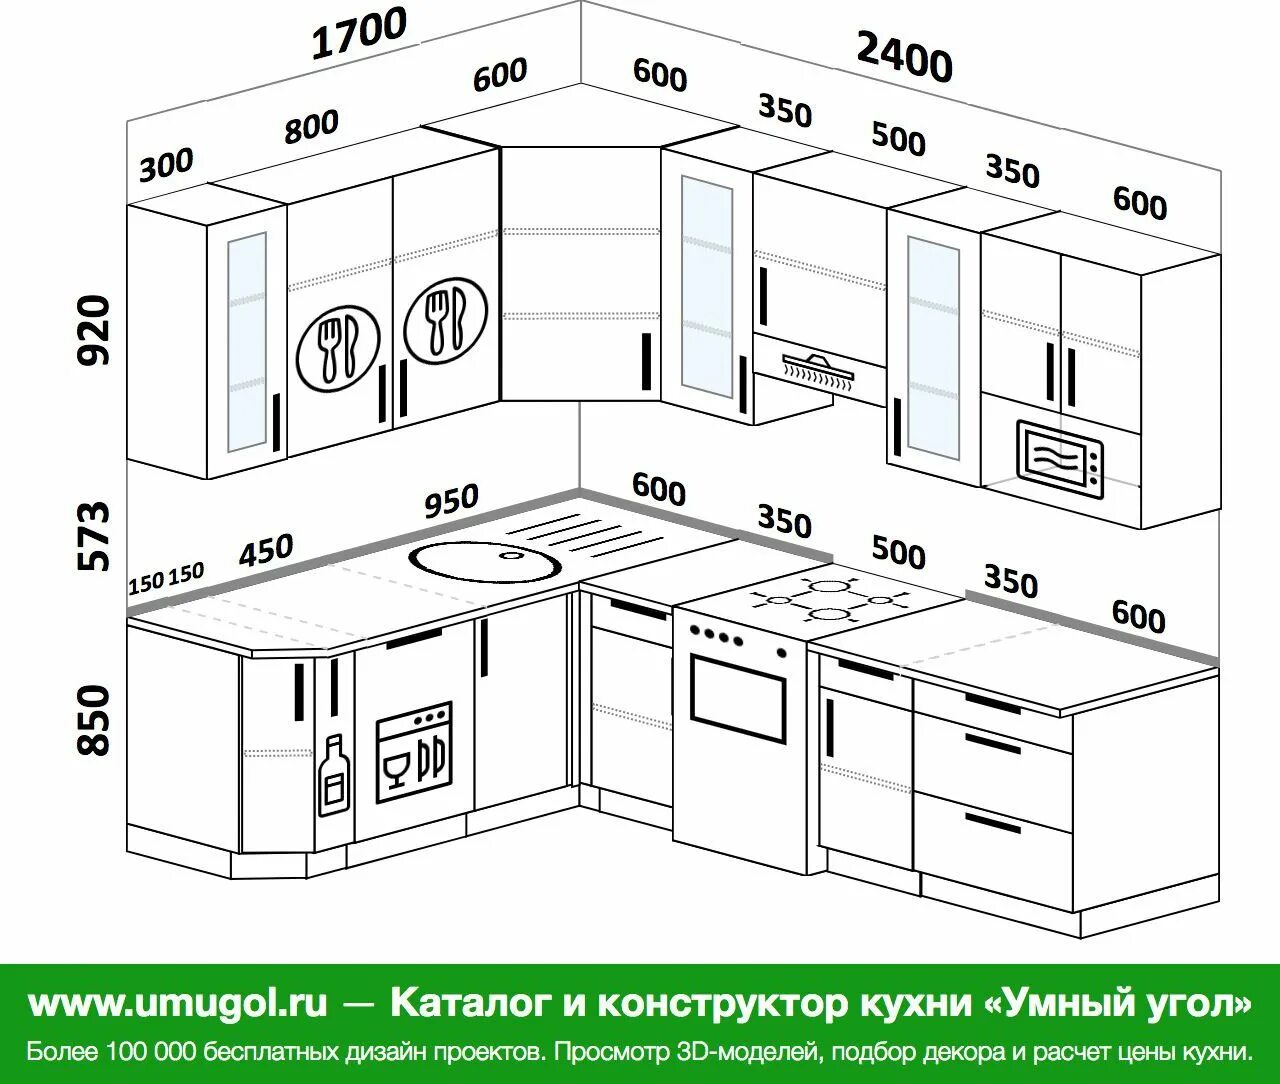 Кухня 1700. Угловая кухня 2500 на 1700. Кухня 170 на 170 угловая. Кухни 170см на 170 угловая. Кухня 2500*1700*2500.